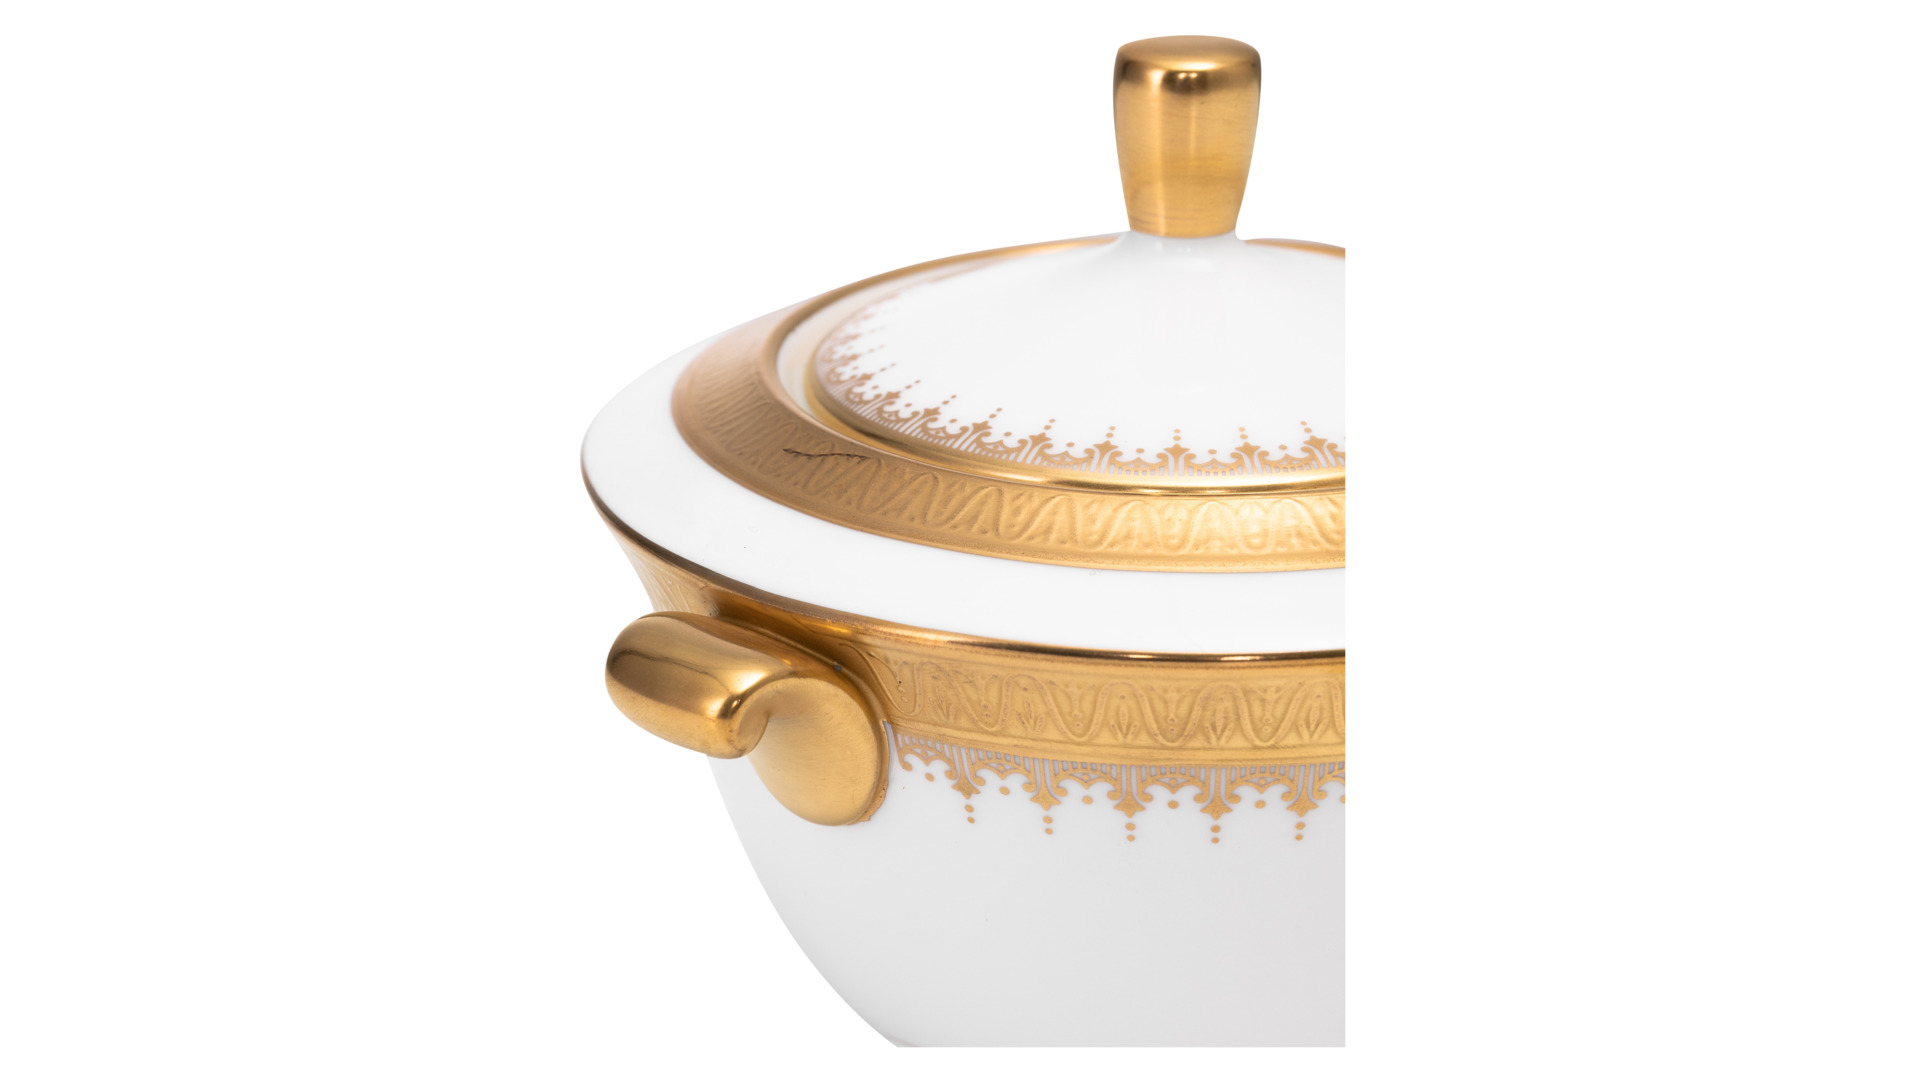 Сервиз чайный Narumi Золотая монета на 6 персон 21 предмет, фарфор костяной